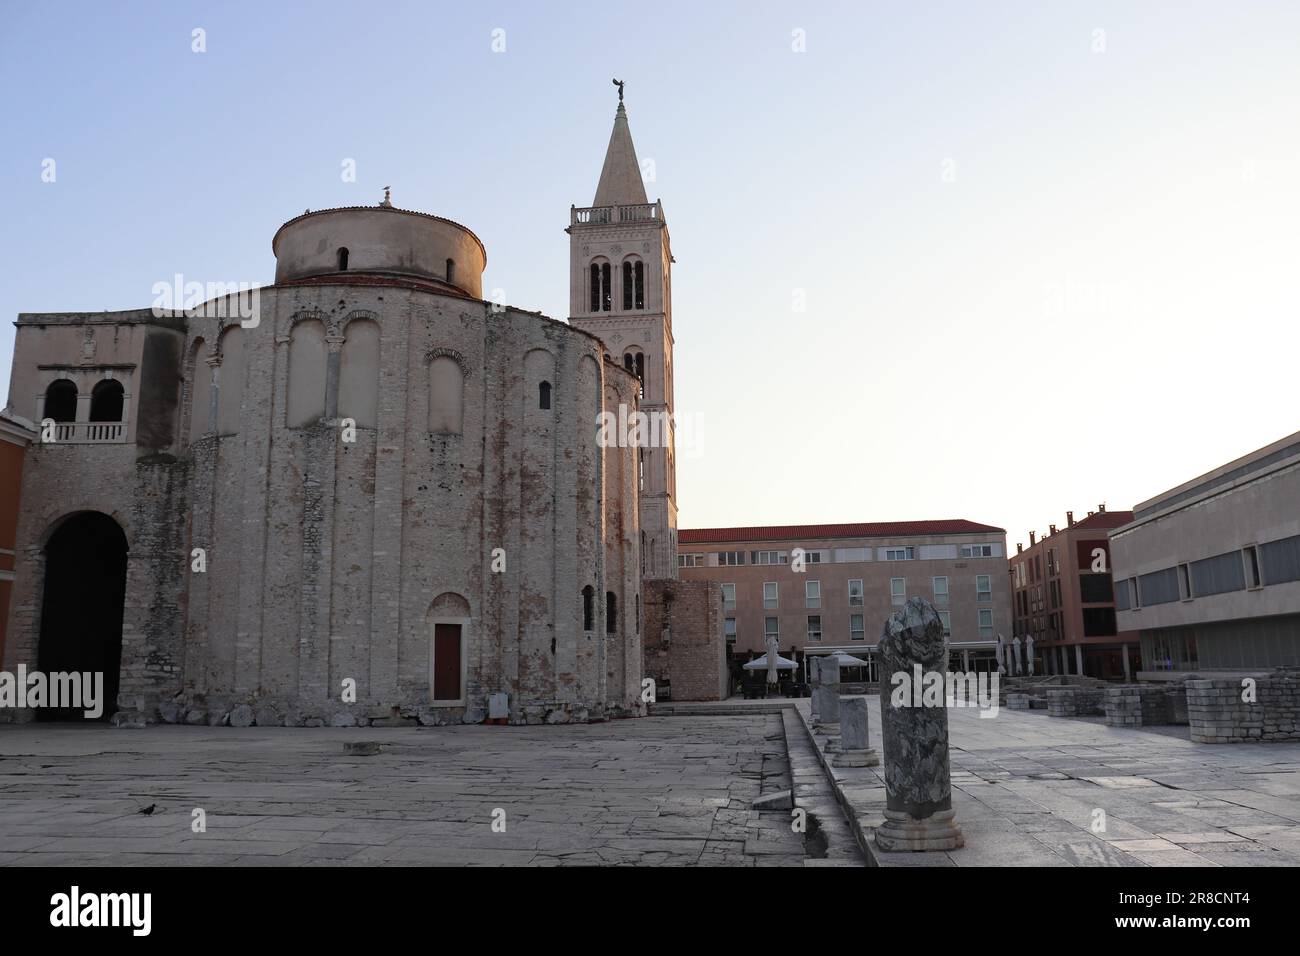 Die Stadt Zadar und historische Denkmäler mit Kirchen und einer Kathedrale, die noch heute genutzt werden. Die Fotos zeigen auch den Küstenabschnitt der Stadt. Stockfoto